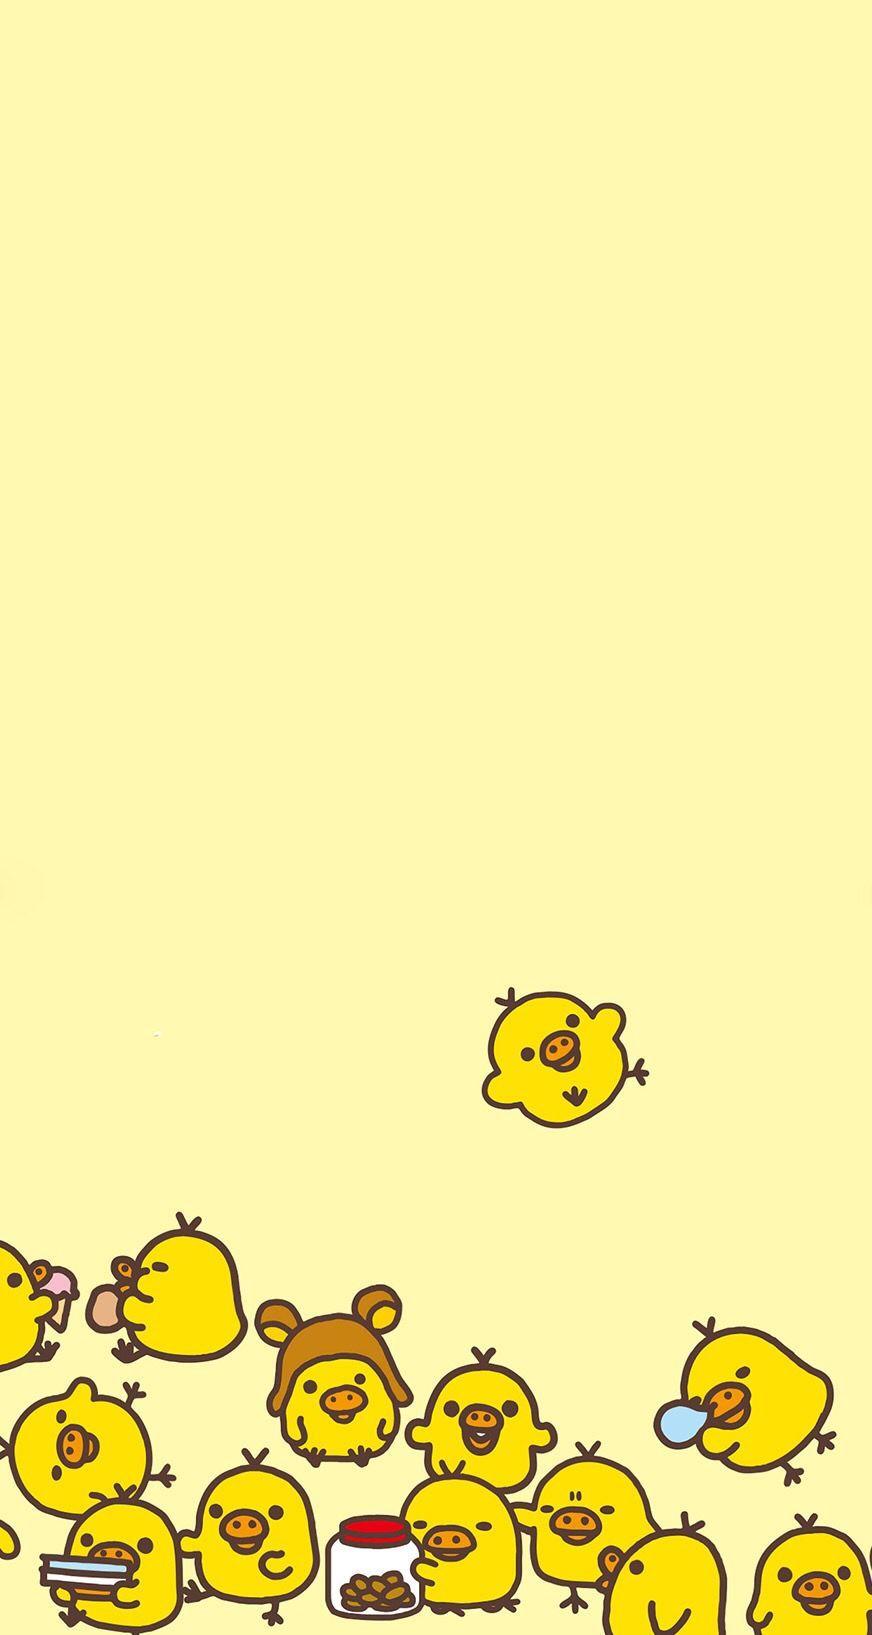 Cute Duck Drawing Wallpapers Top Free Cute Duck Drawing Backgrounds Wallpaperaccess #ducks #ducksofinstagram #cute ducks #baby ducks #ducklings #birds #birdsofinstagram #duck #positive aesthetic #positivity #positive #positive moodboard #yellow aesthetic #yellow. cute duck drawing wallpapers top free